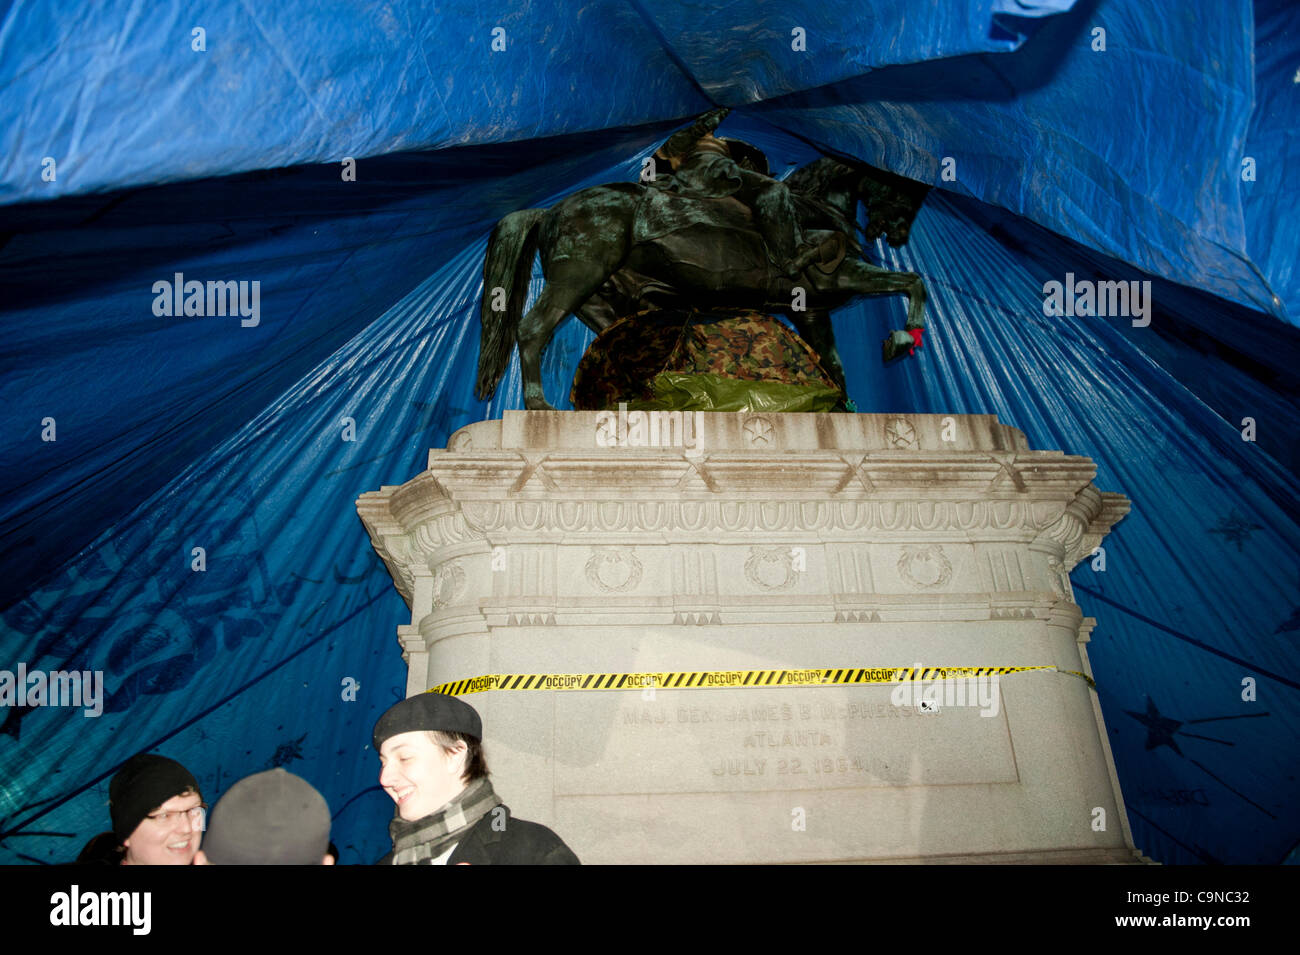 Jan 30,2012, McPherson Square, occupent Washington DC, deux personnes dans la grande tente bleue placée sur la statue du général McPherson.dans la nuit la ville avait dit à l'occupant pas de dormir ou en camping dans le parc. Banque D'Images